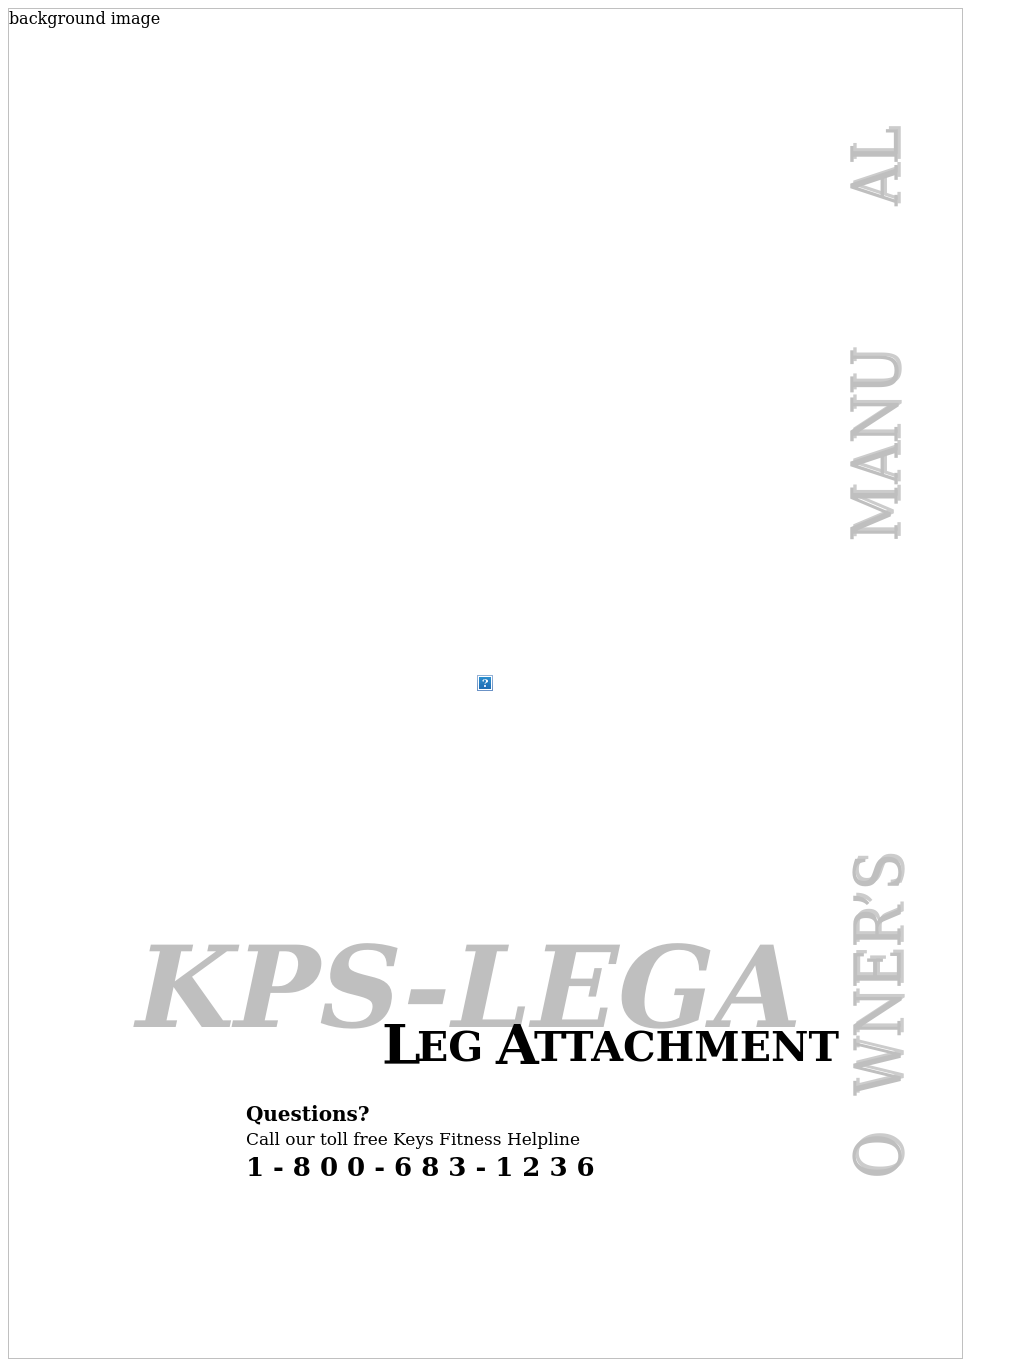 Leg Attachment KPS-LEGA